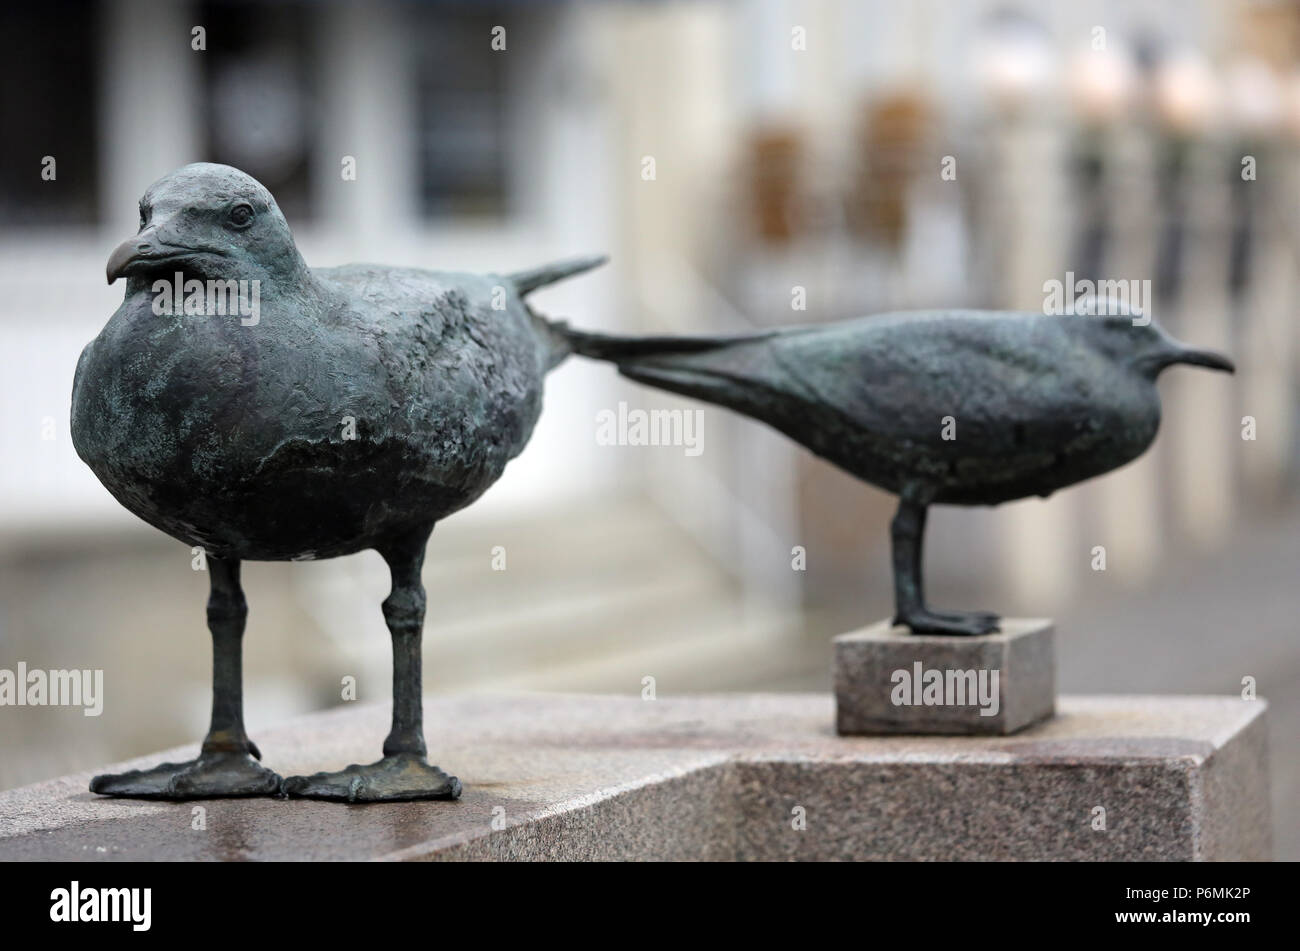 Warnemuende, bronze sculpture Moewen by Regina Lange Stock Photo